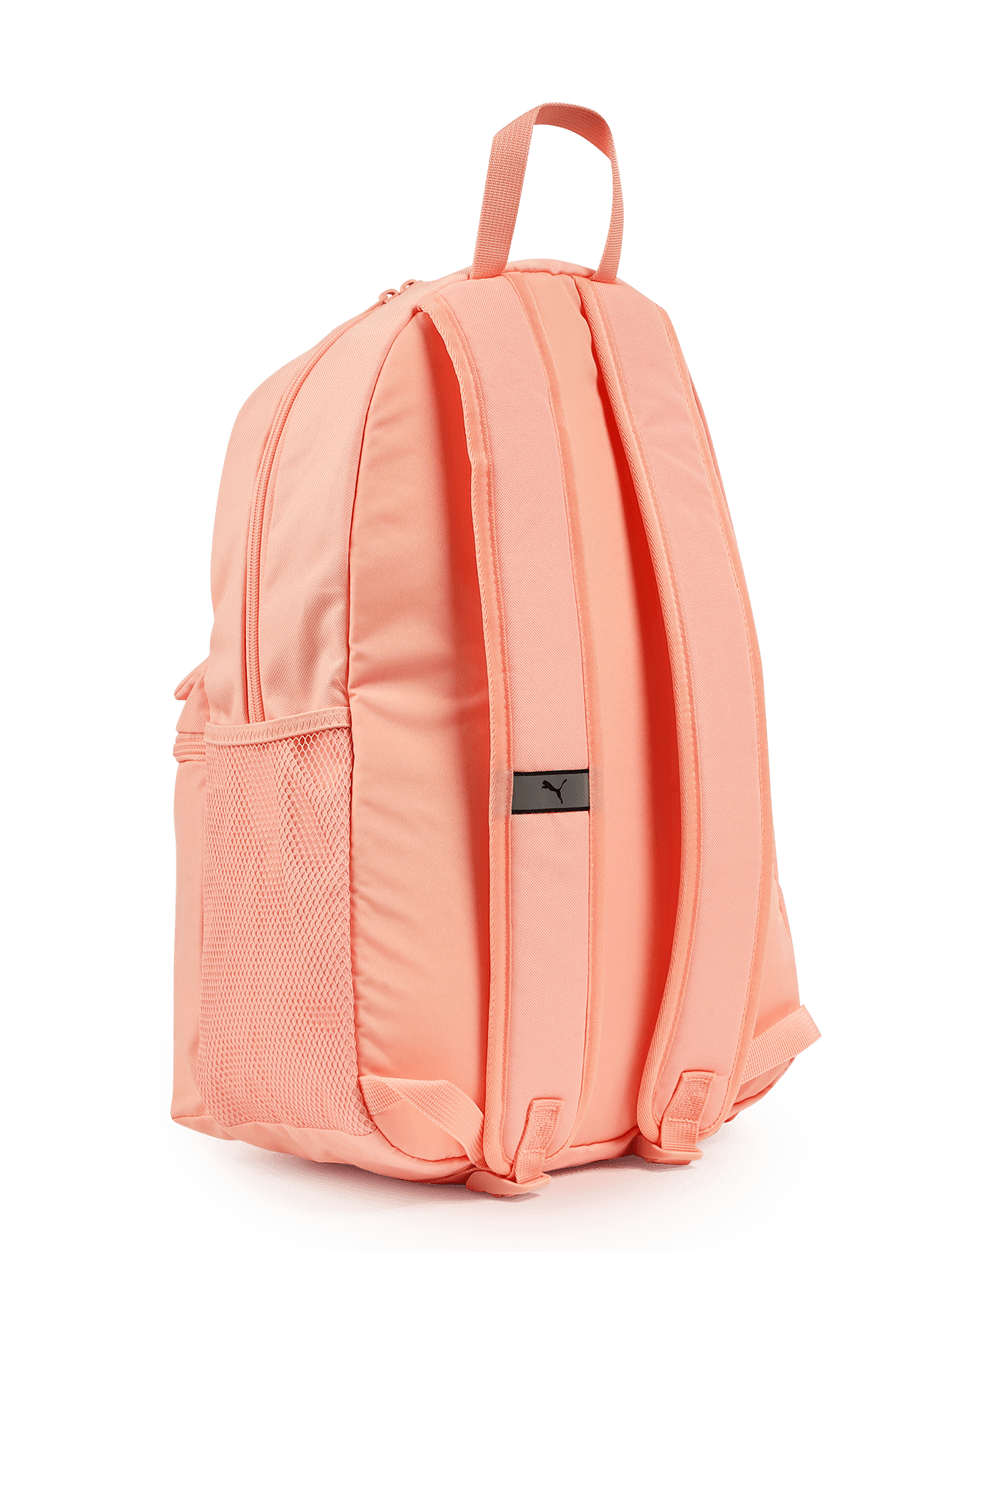 Puma Phase Backpack in Pink PUMA